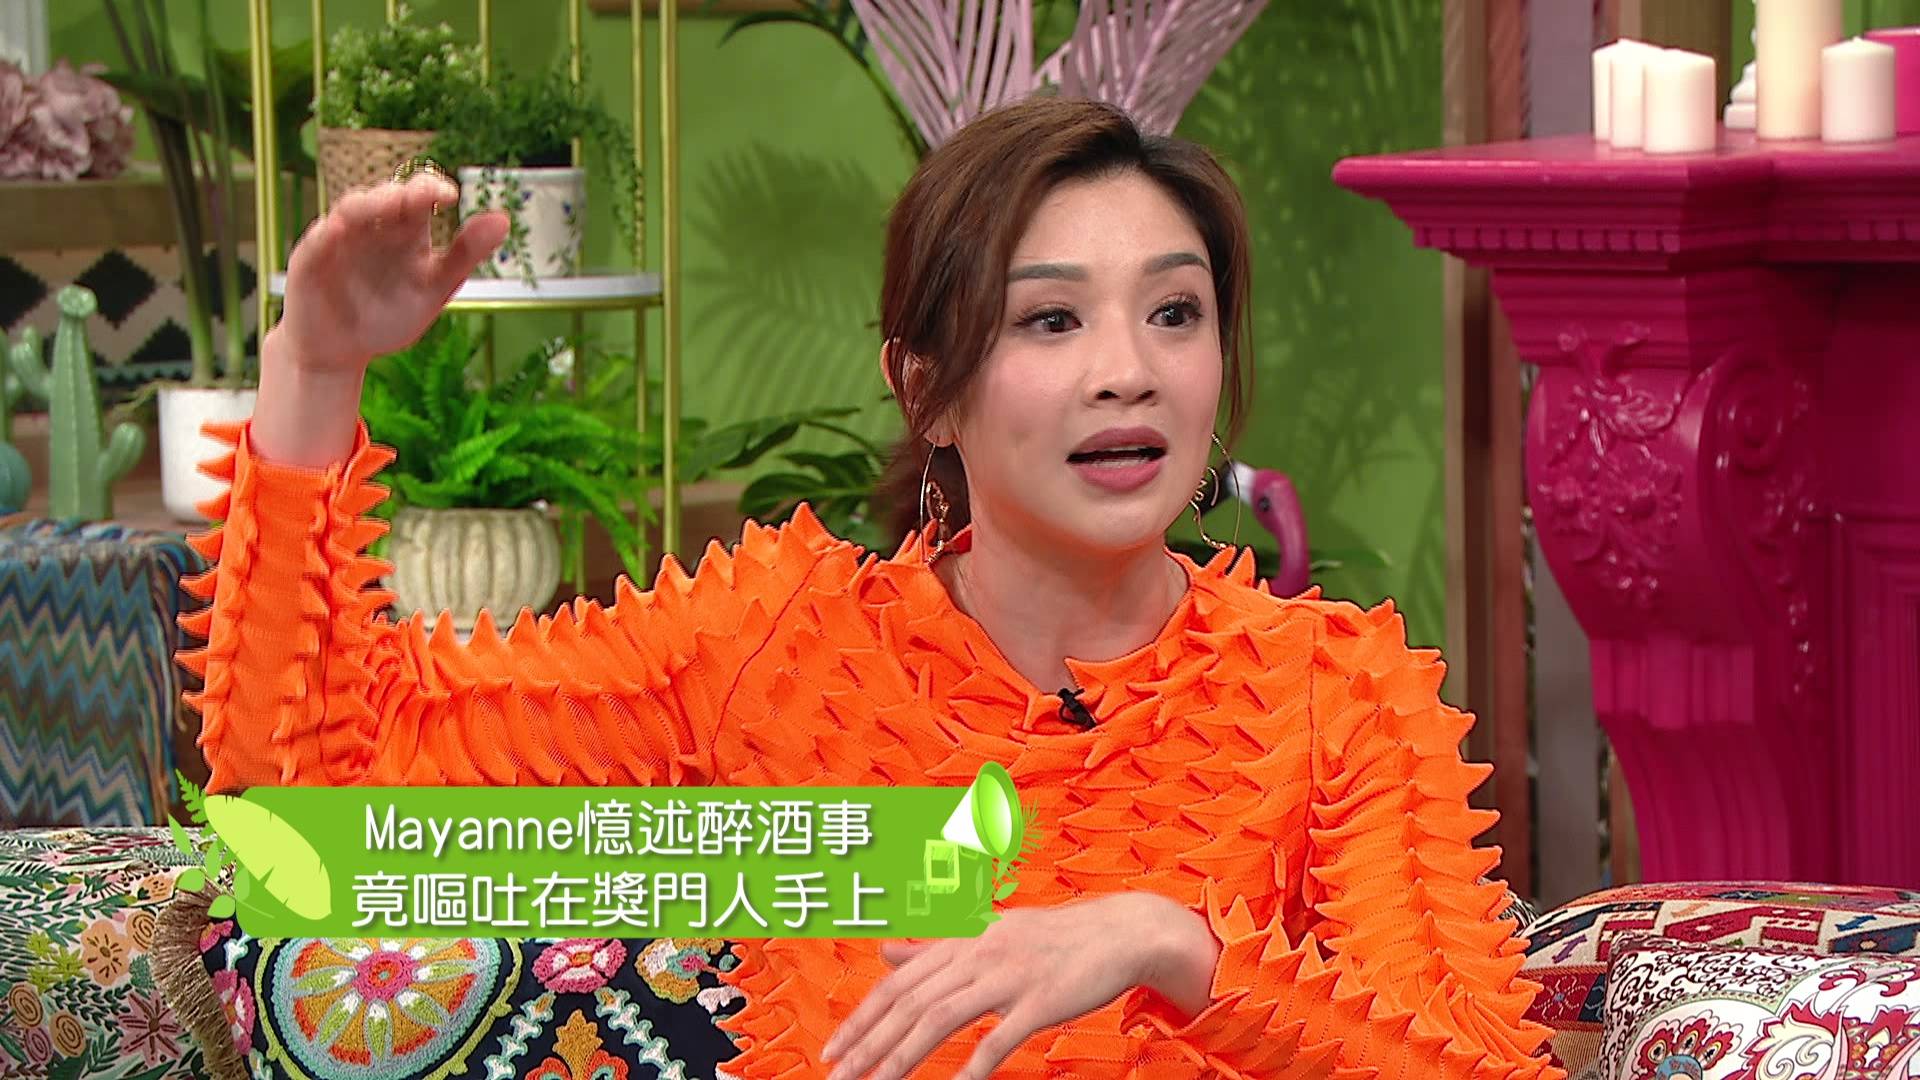 Mayanne小喇叭 （图片来源：TVB）